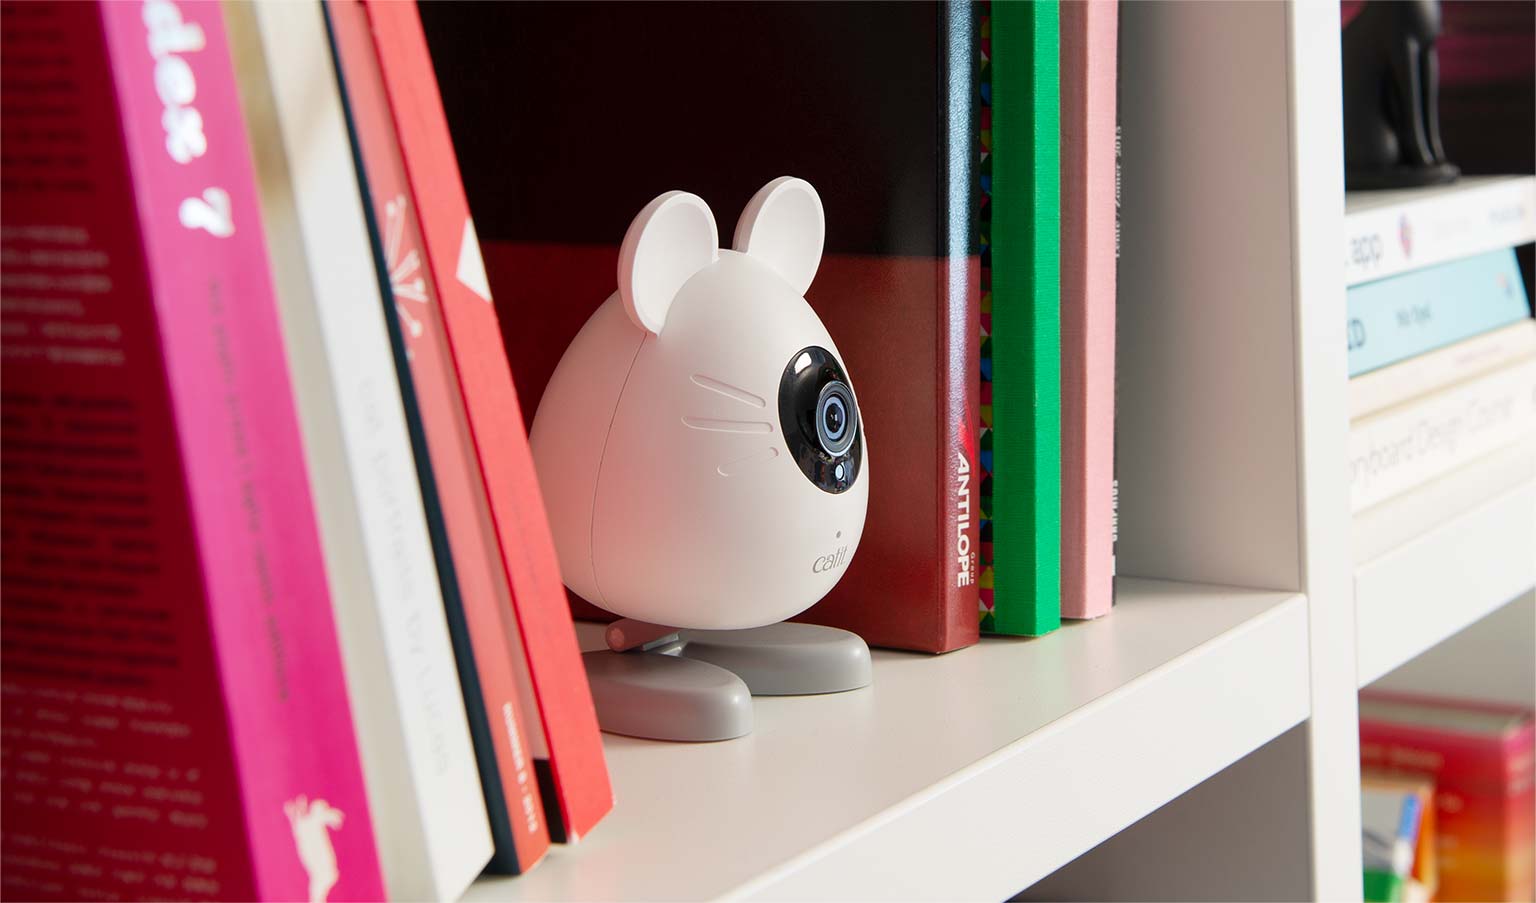 Telecamera PIXI Smart Mouse collocata sulla libreria